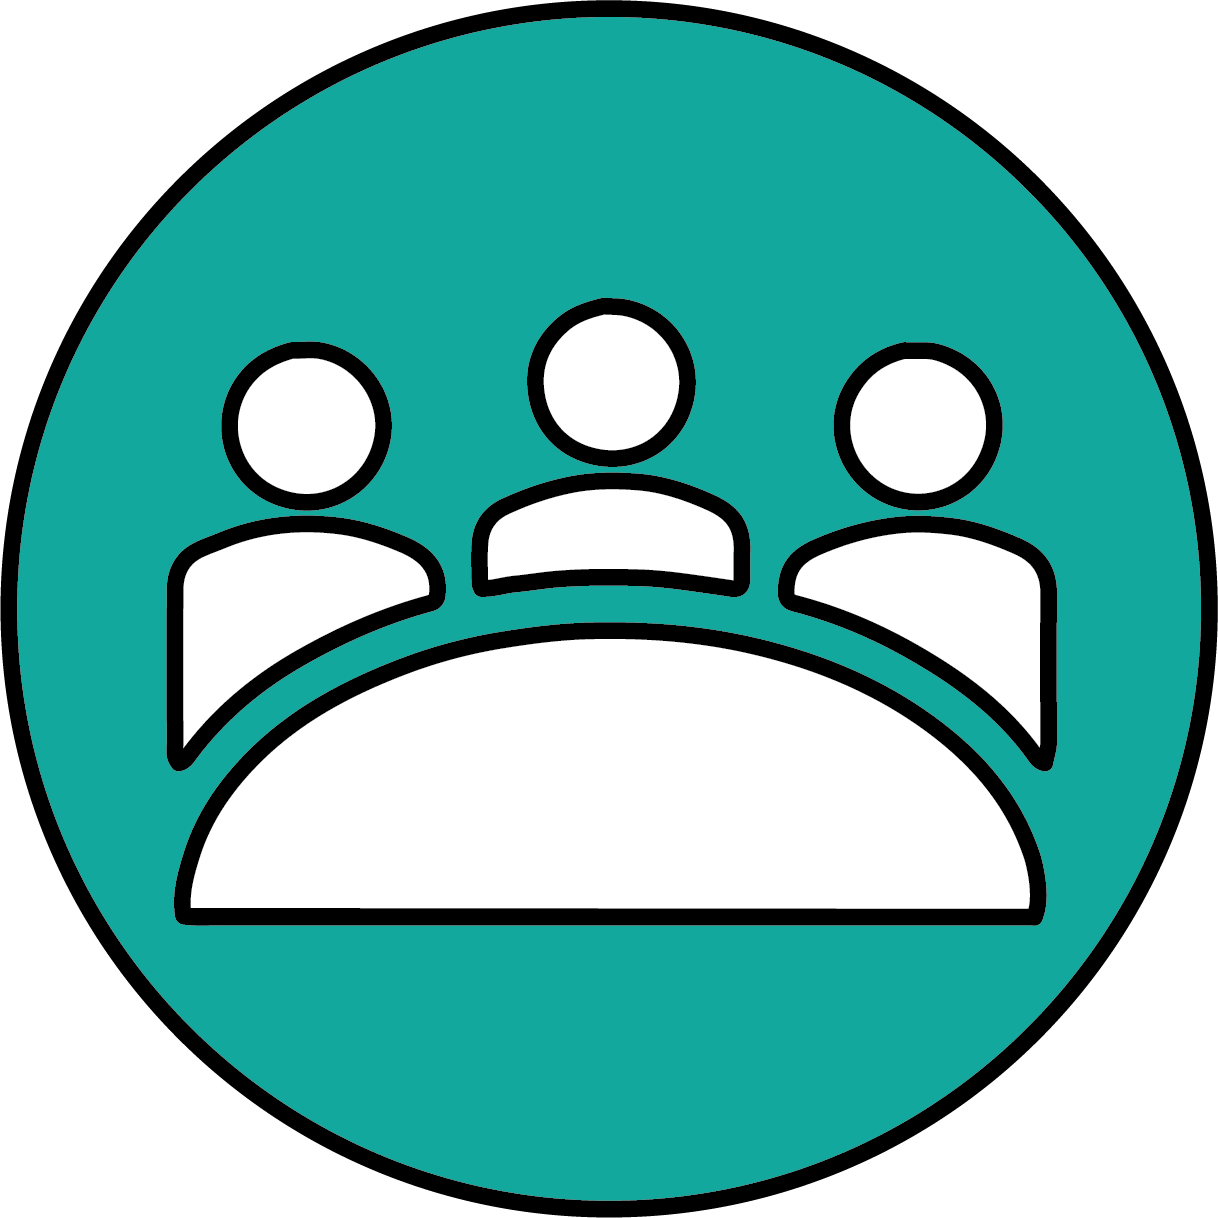 Icon representing Collaborate and Convene